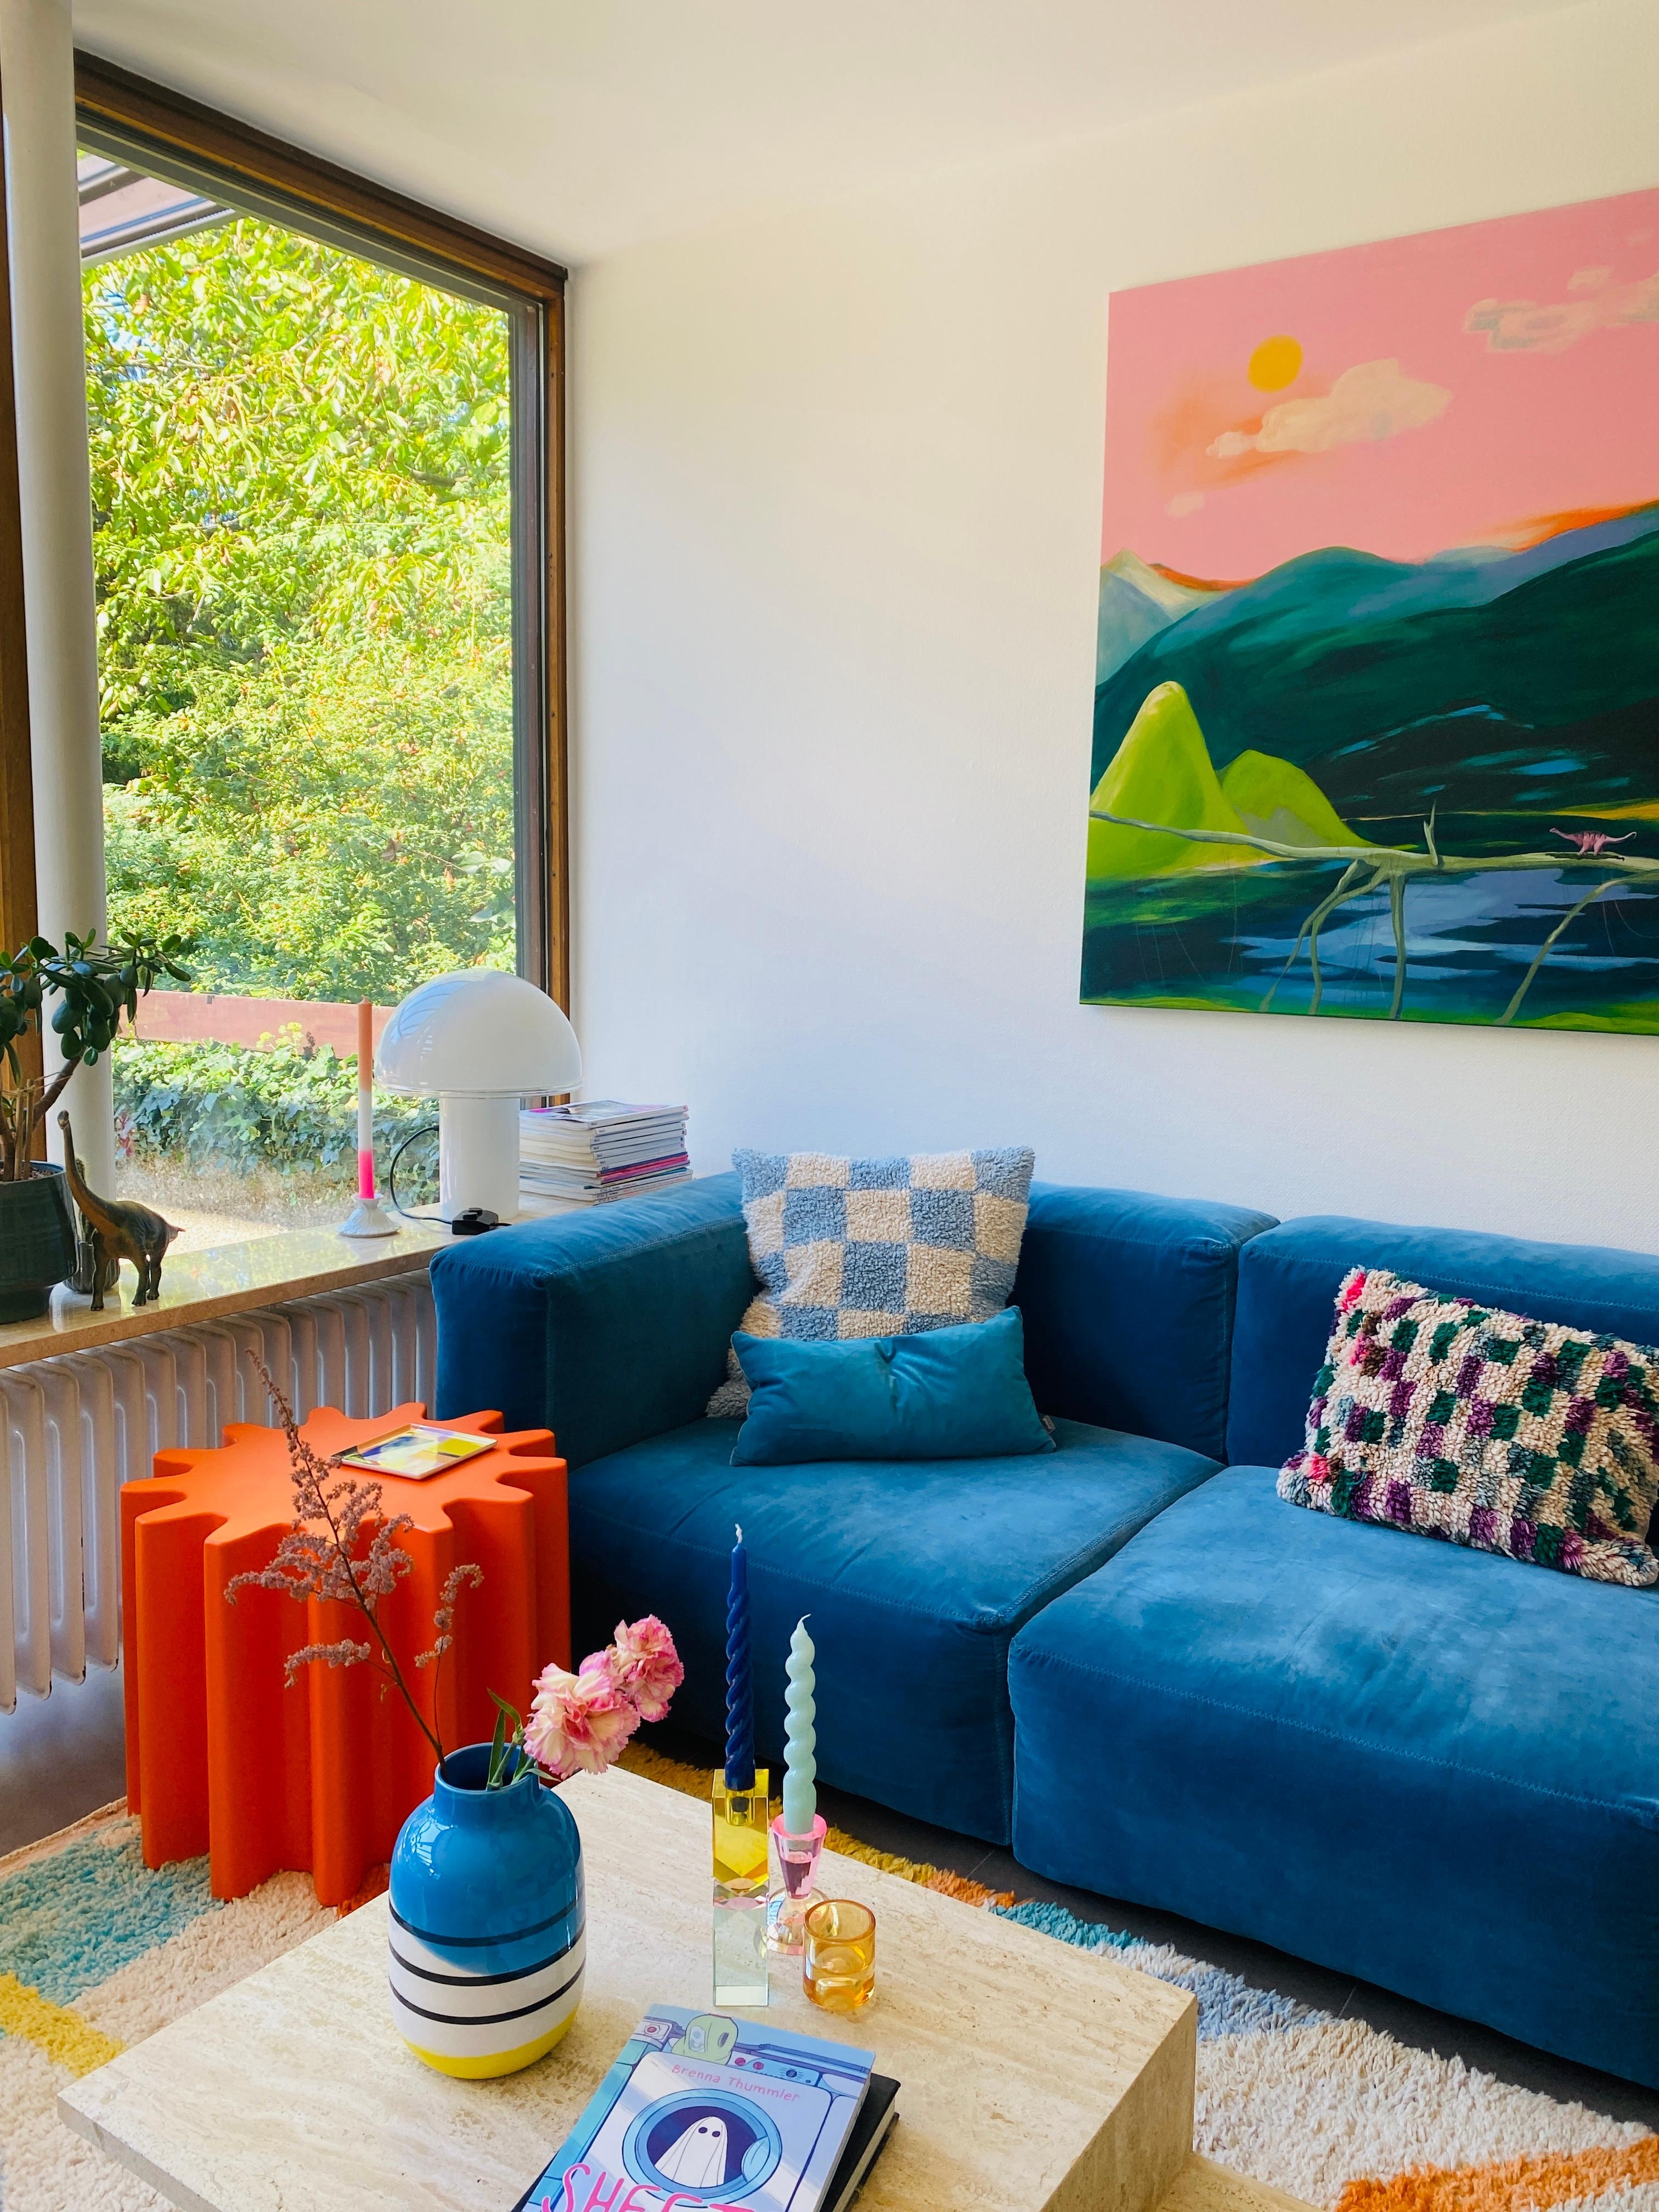 Ich bin verliebt in meinen neuen Beistelltisch „Gear“ in Knallorange. Inspo aus dem aktuellen Couchmagazin 😊 #wohnzimmer #couchtisch #bunt #orange #blau